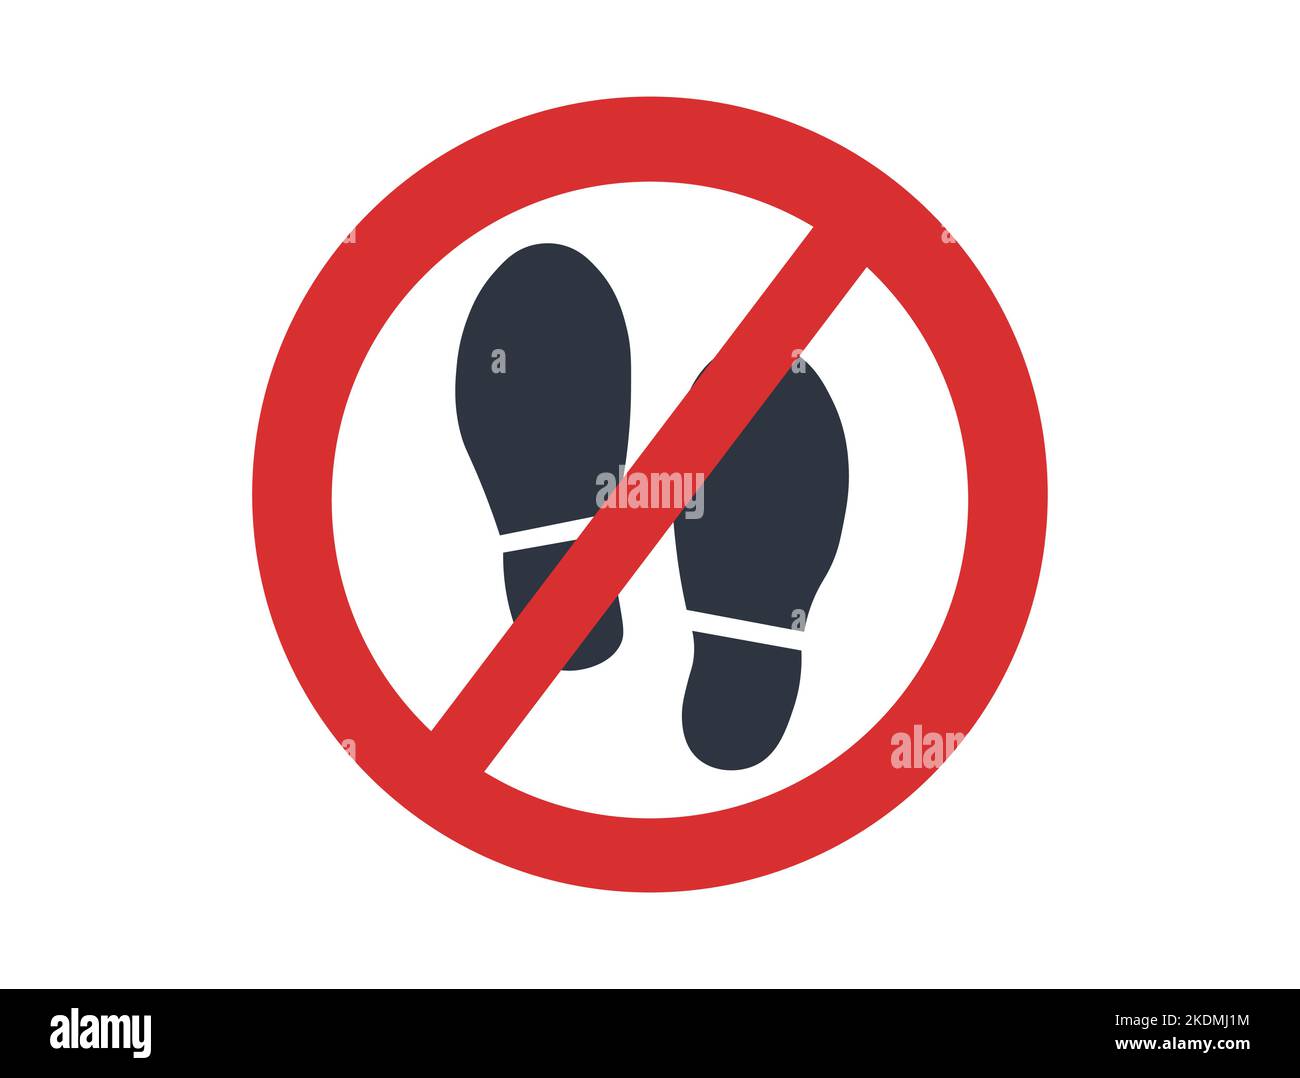 Enlève tes chaussures Banque d'images détourées - Alamy